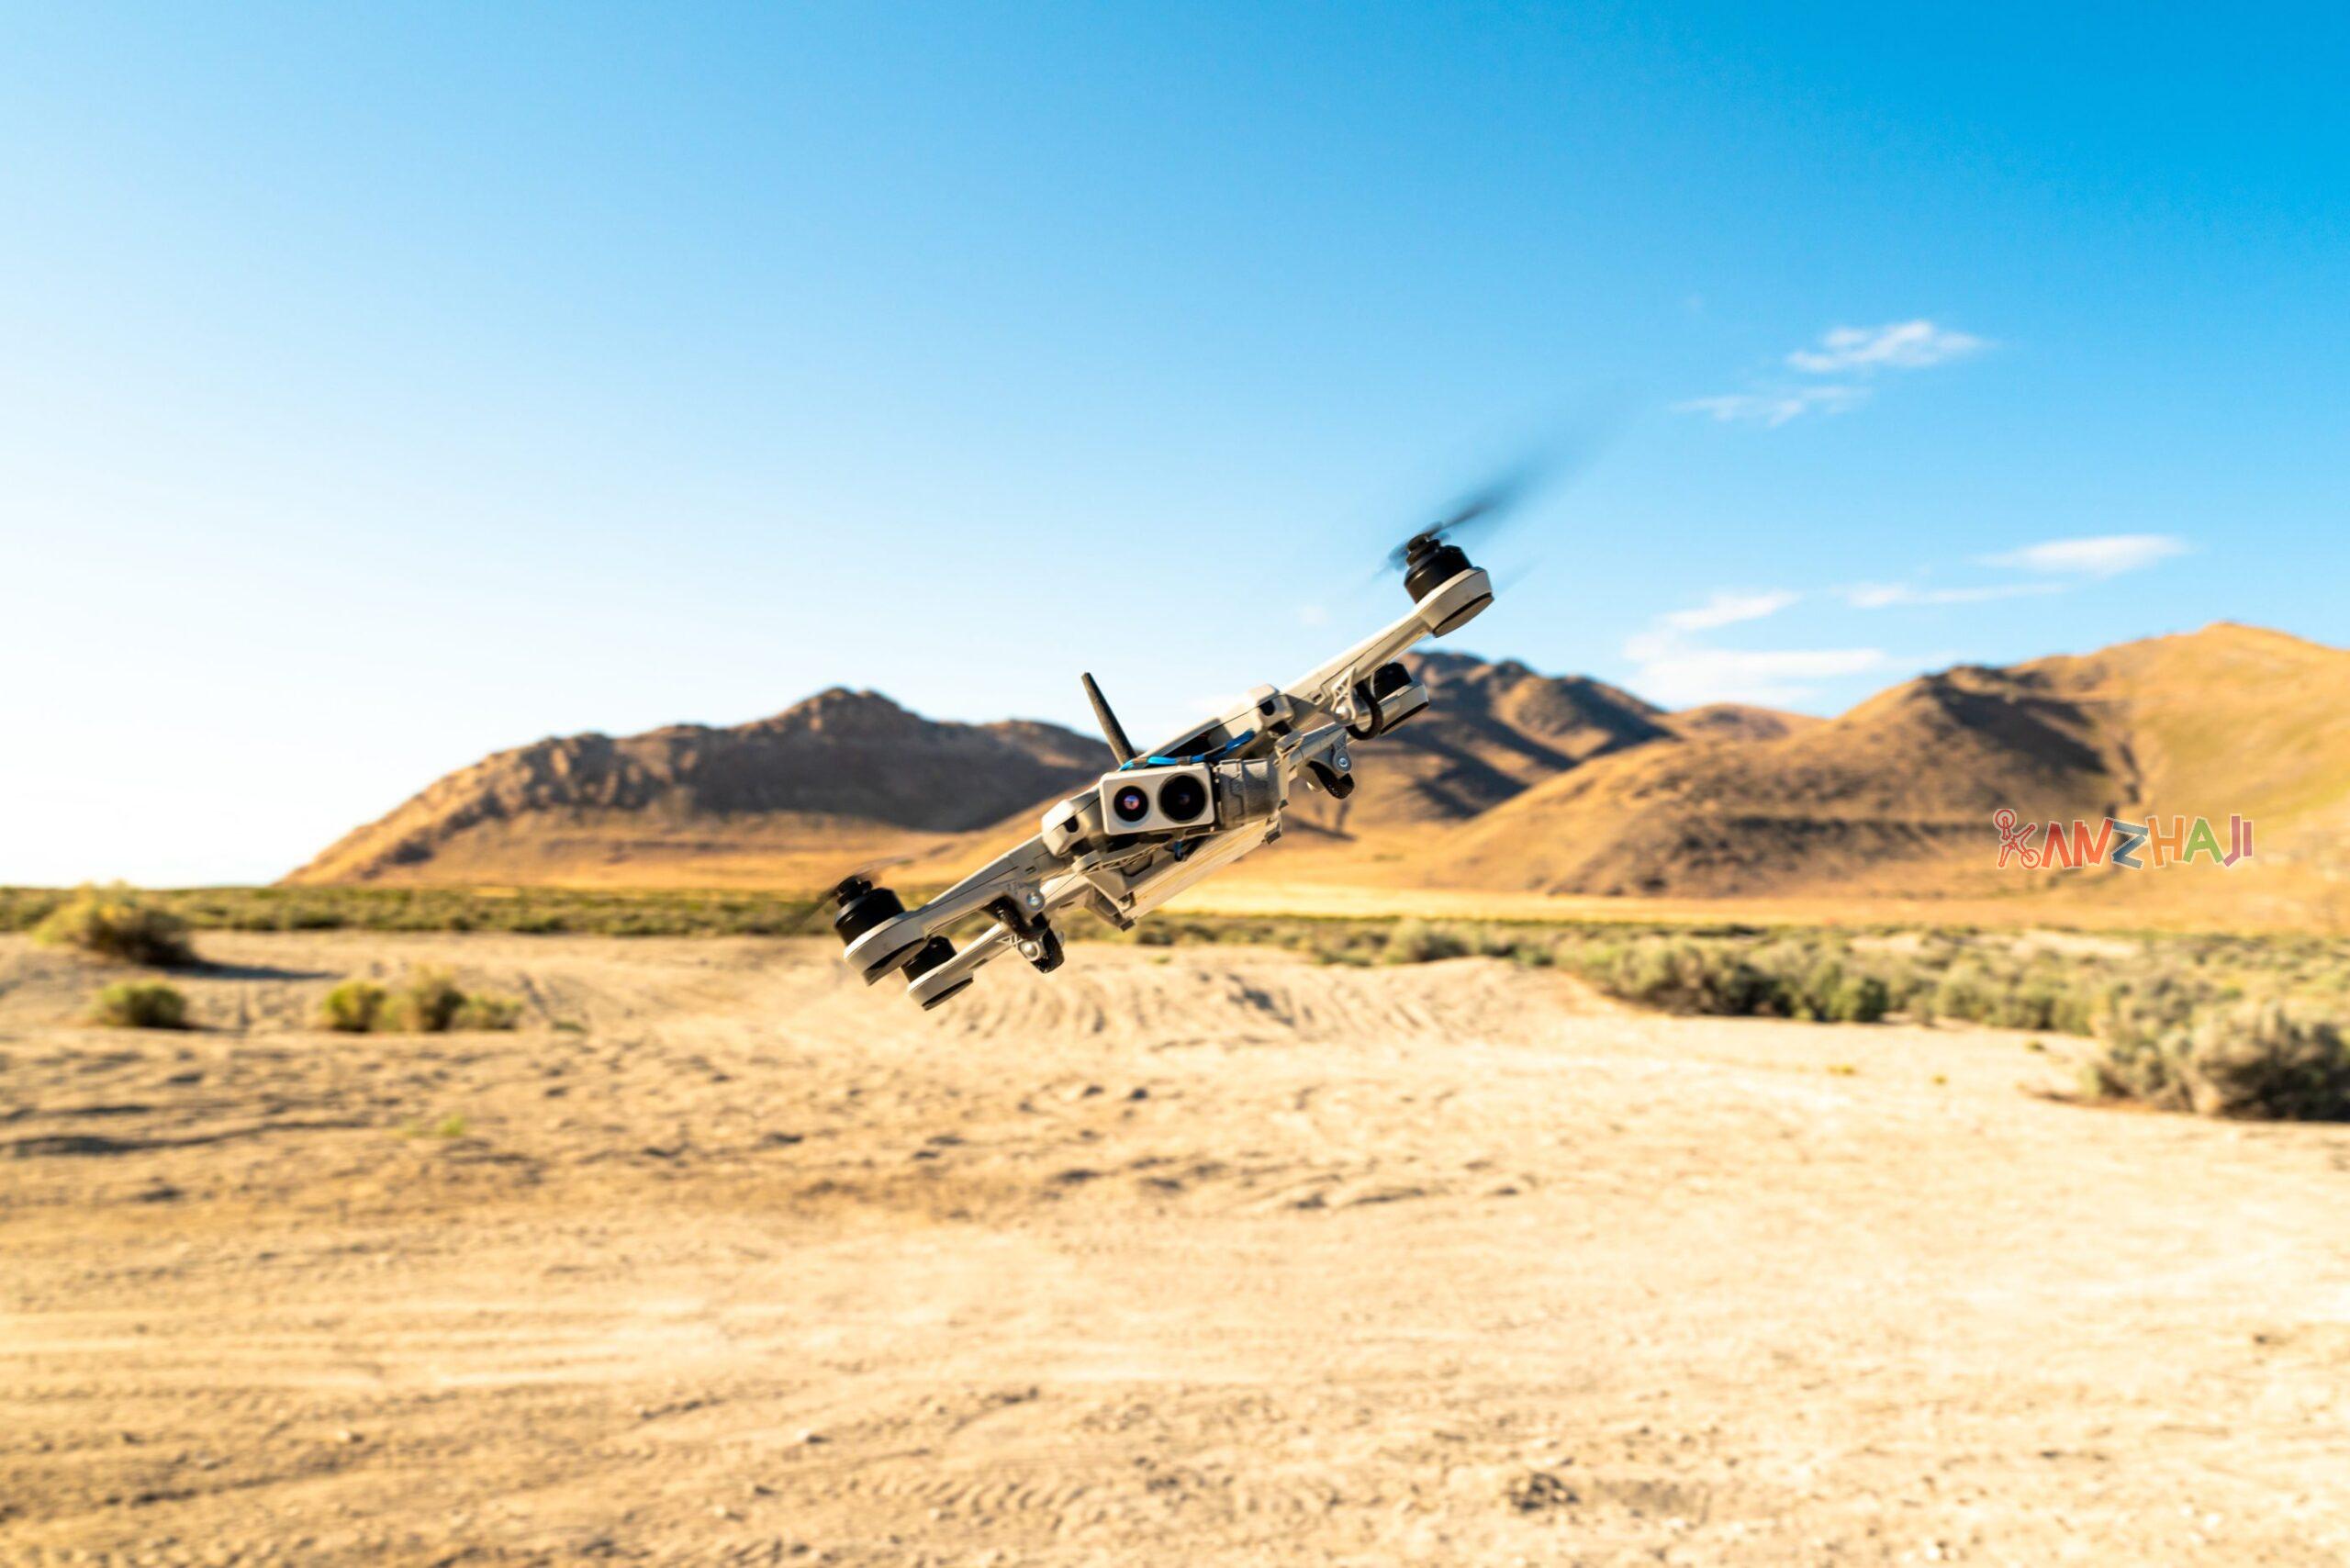 美国边境巡逻队购买超过100万美元的Teal金鹰无人机